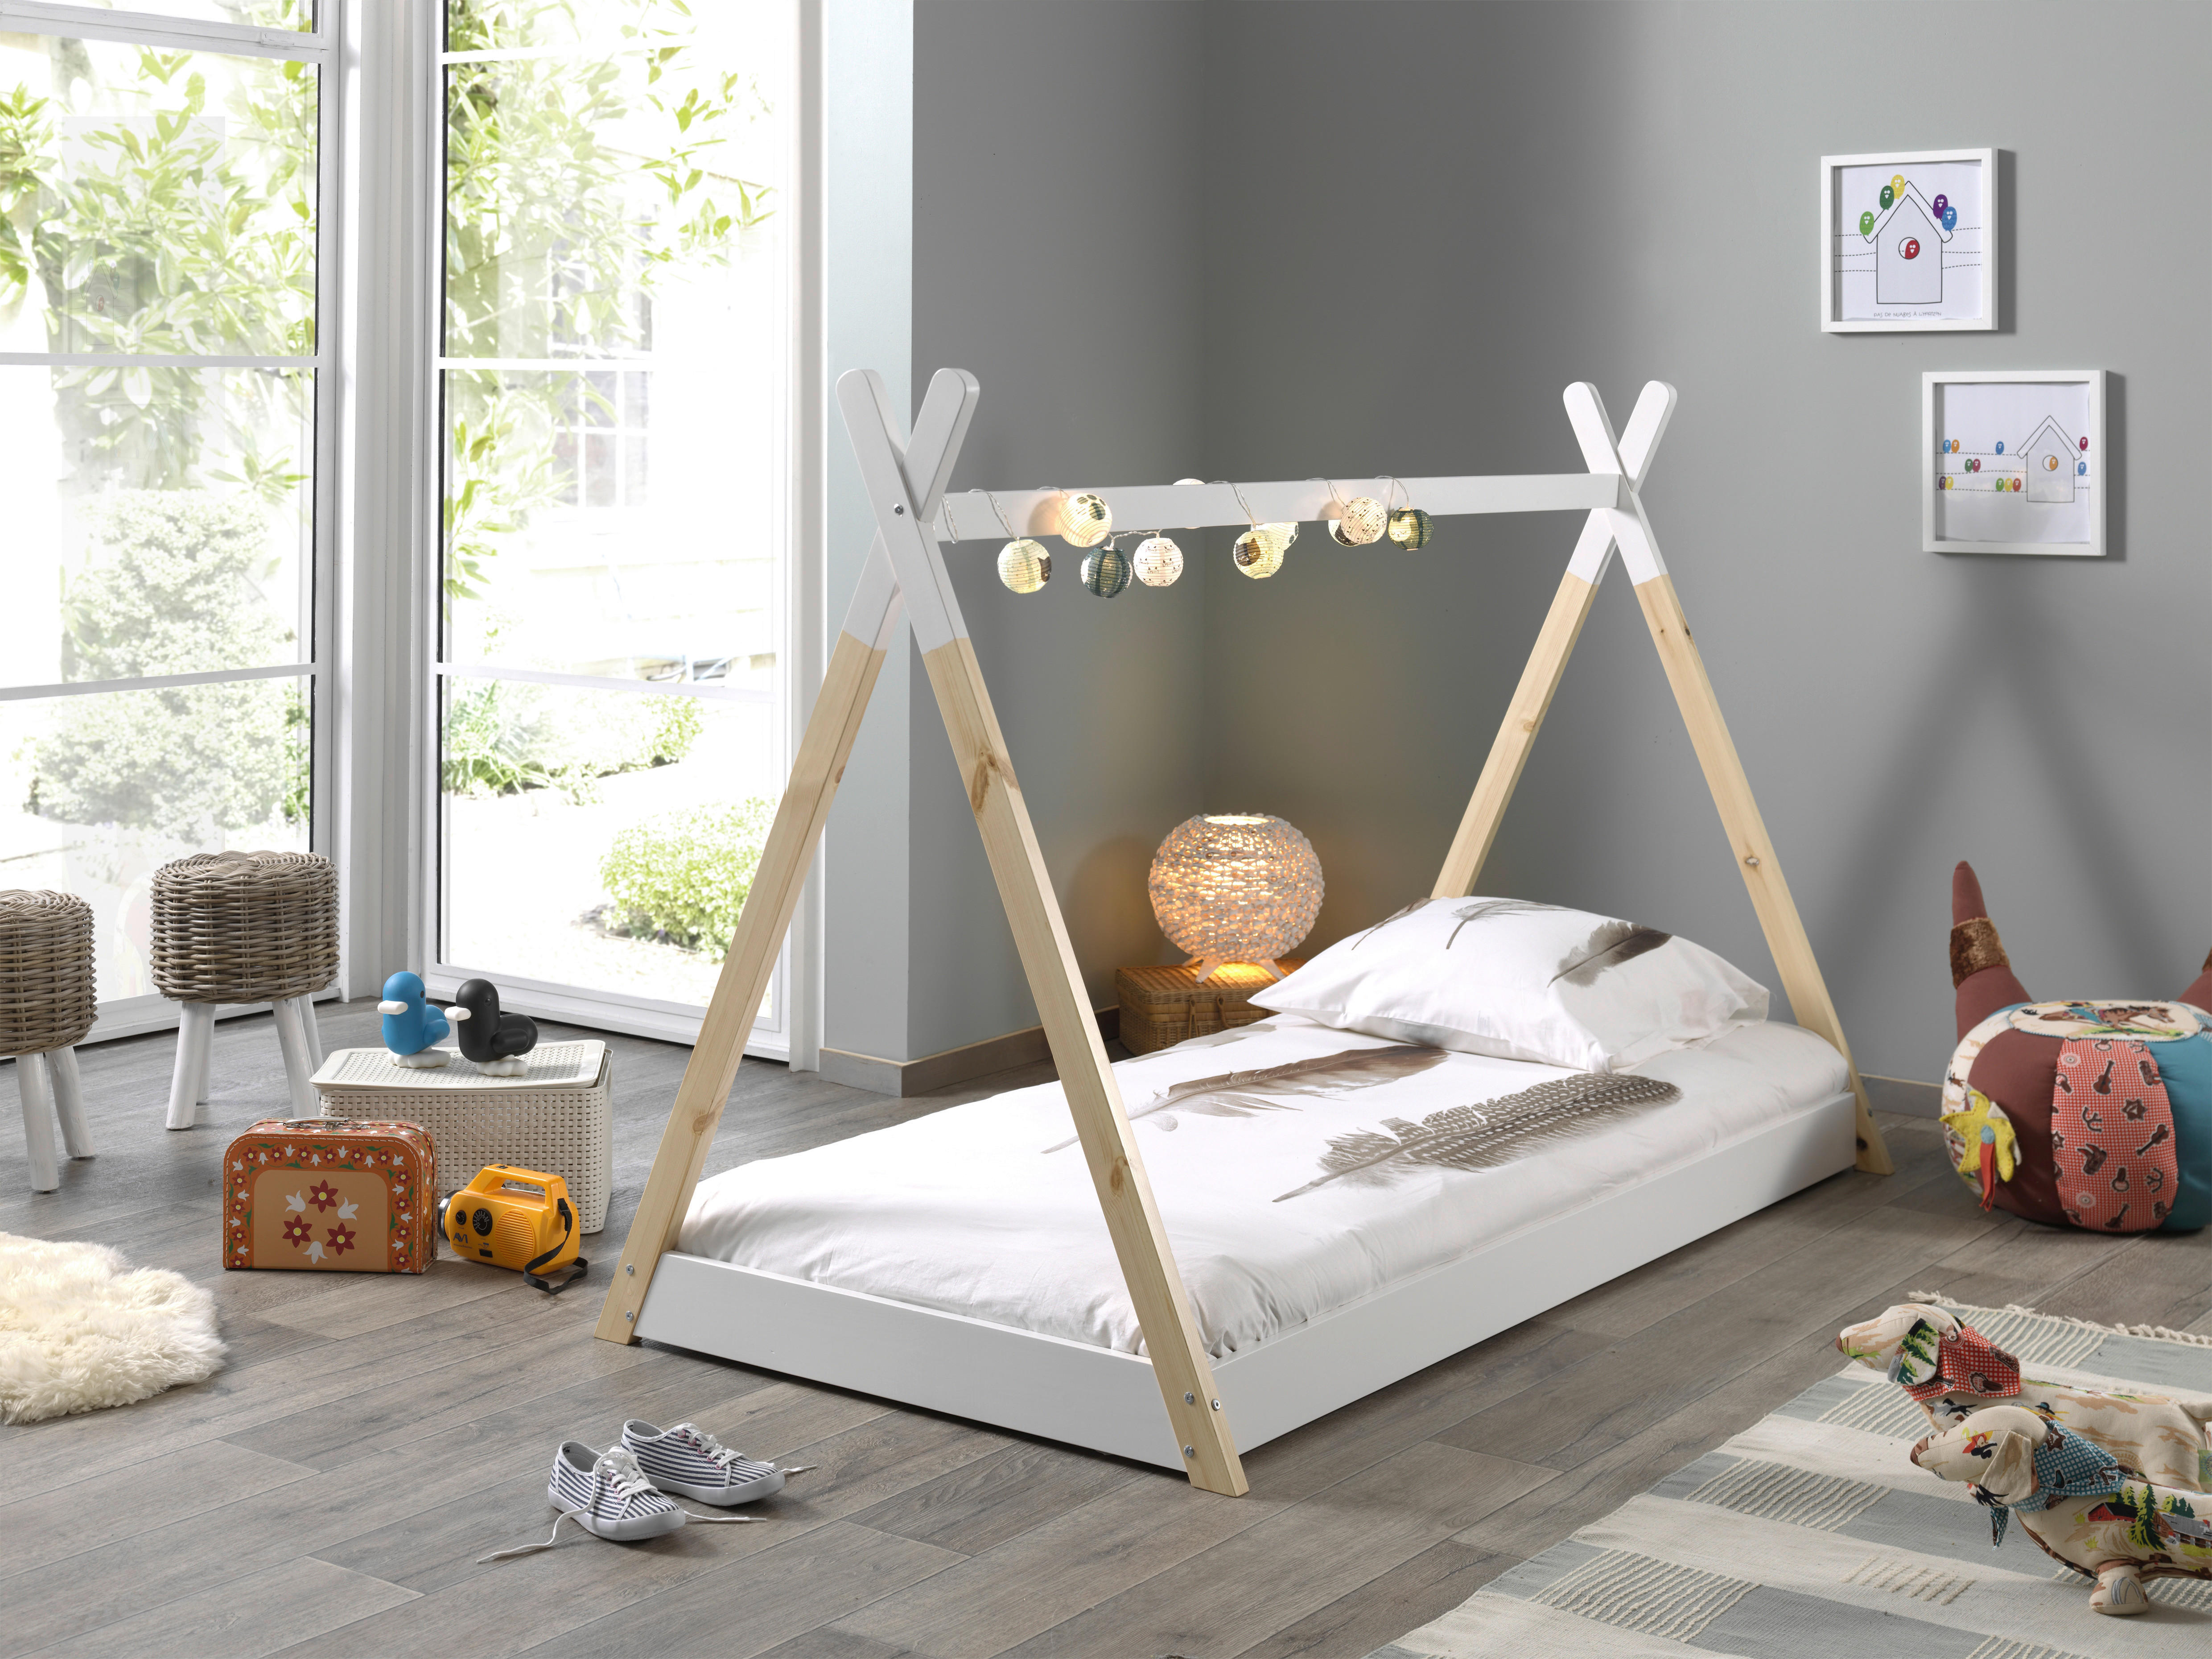 Montessori-Bett 70/140 cm  in Naturfarben, Weiß  - Naturfarben/Weiß, Natur, Holz/Textil (70/140cm) - MID.YOU